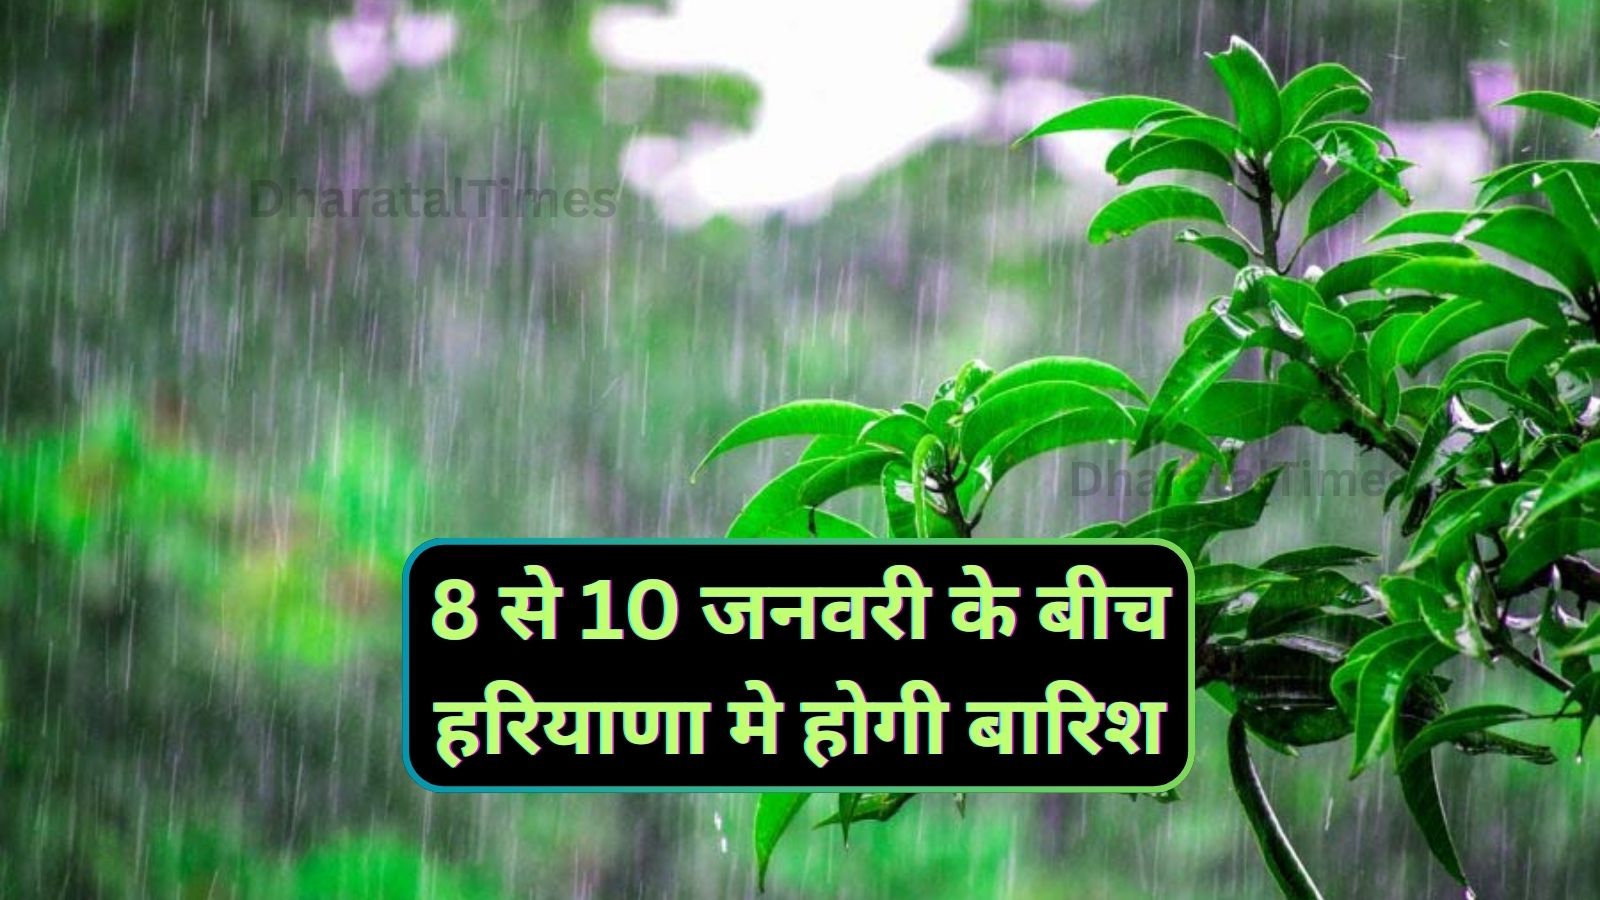 Haryana Me Barish Kab Hogi: 8 से 10 जनवरी के बीच हरियाणा मे होगी बारिश,जानिए मौसम का पूर्वानुमान